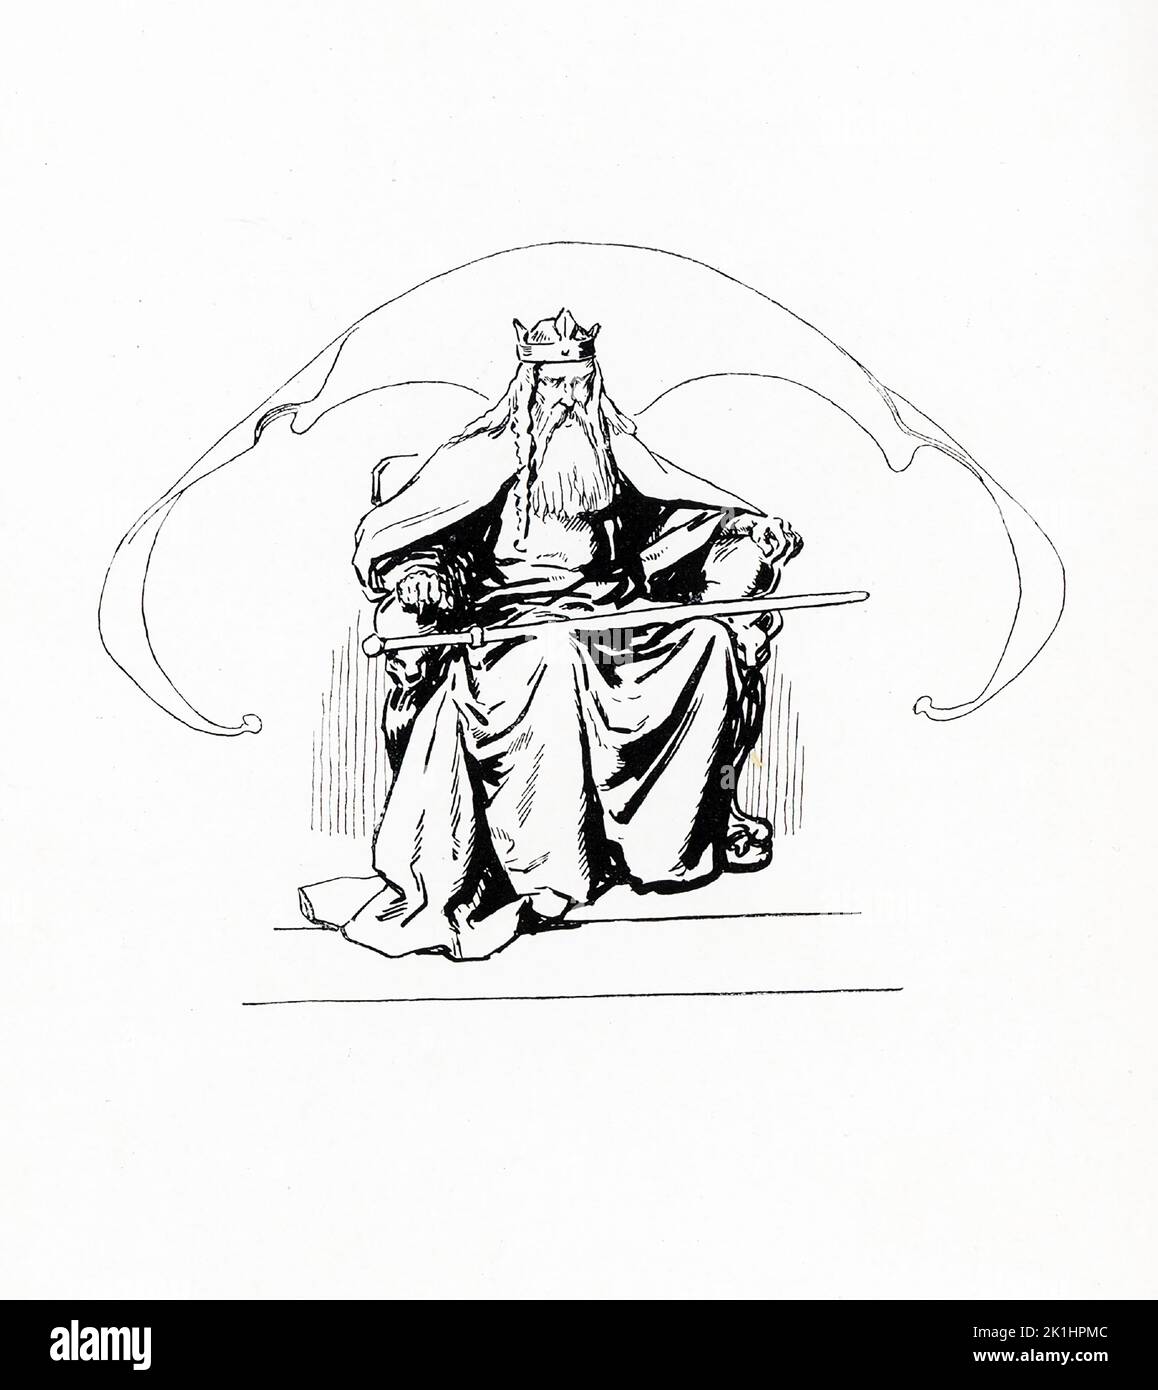 Secondo la mitologia norrena, Odino era uno dei principali dei e il governatore di Asgard (il paese o capitale degli dei norrani). Questa illustrazione di Gordon Browne risale al 1913. Foto Stock